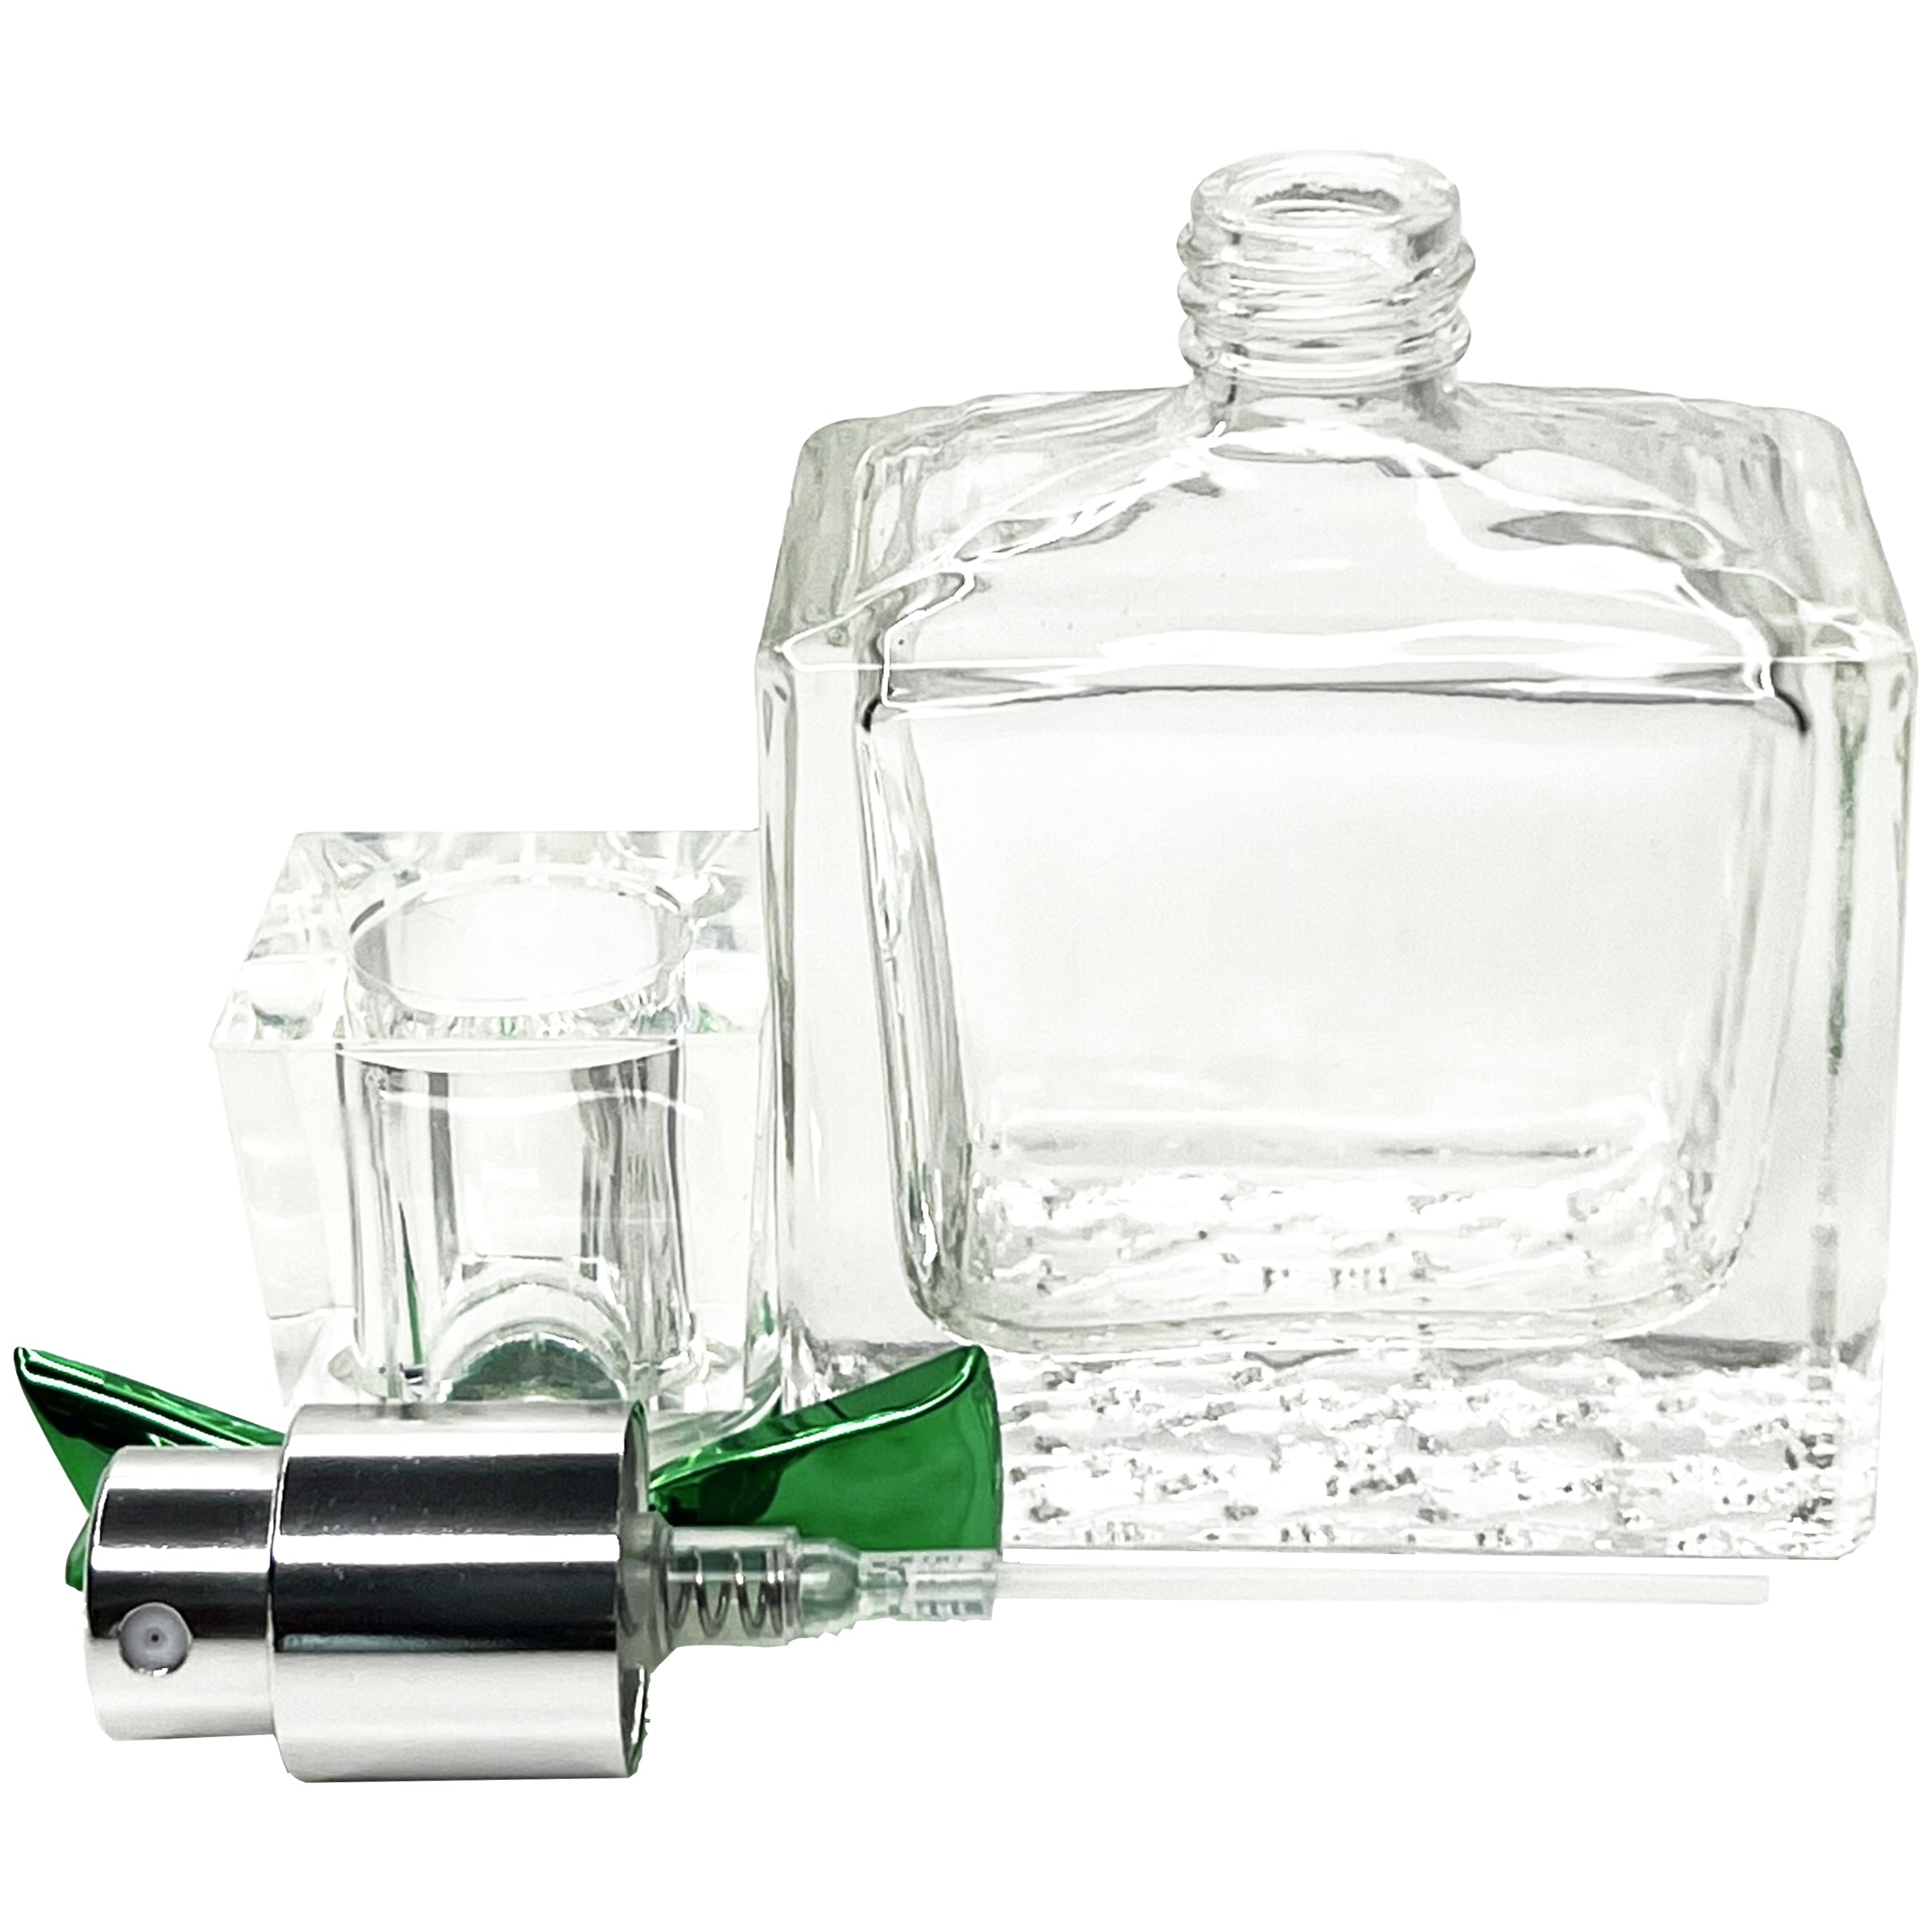 30ml 1oz Bow thick glass perfume spray bottles